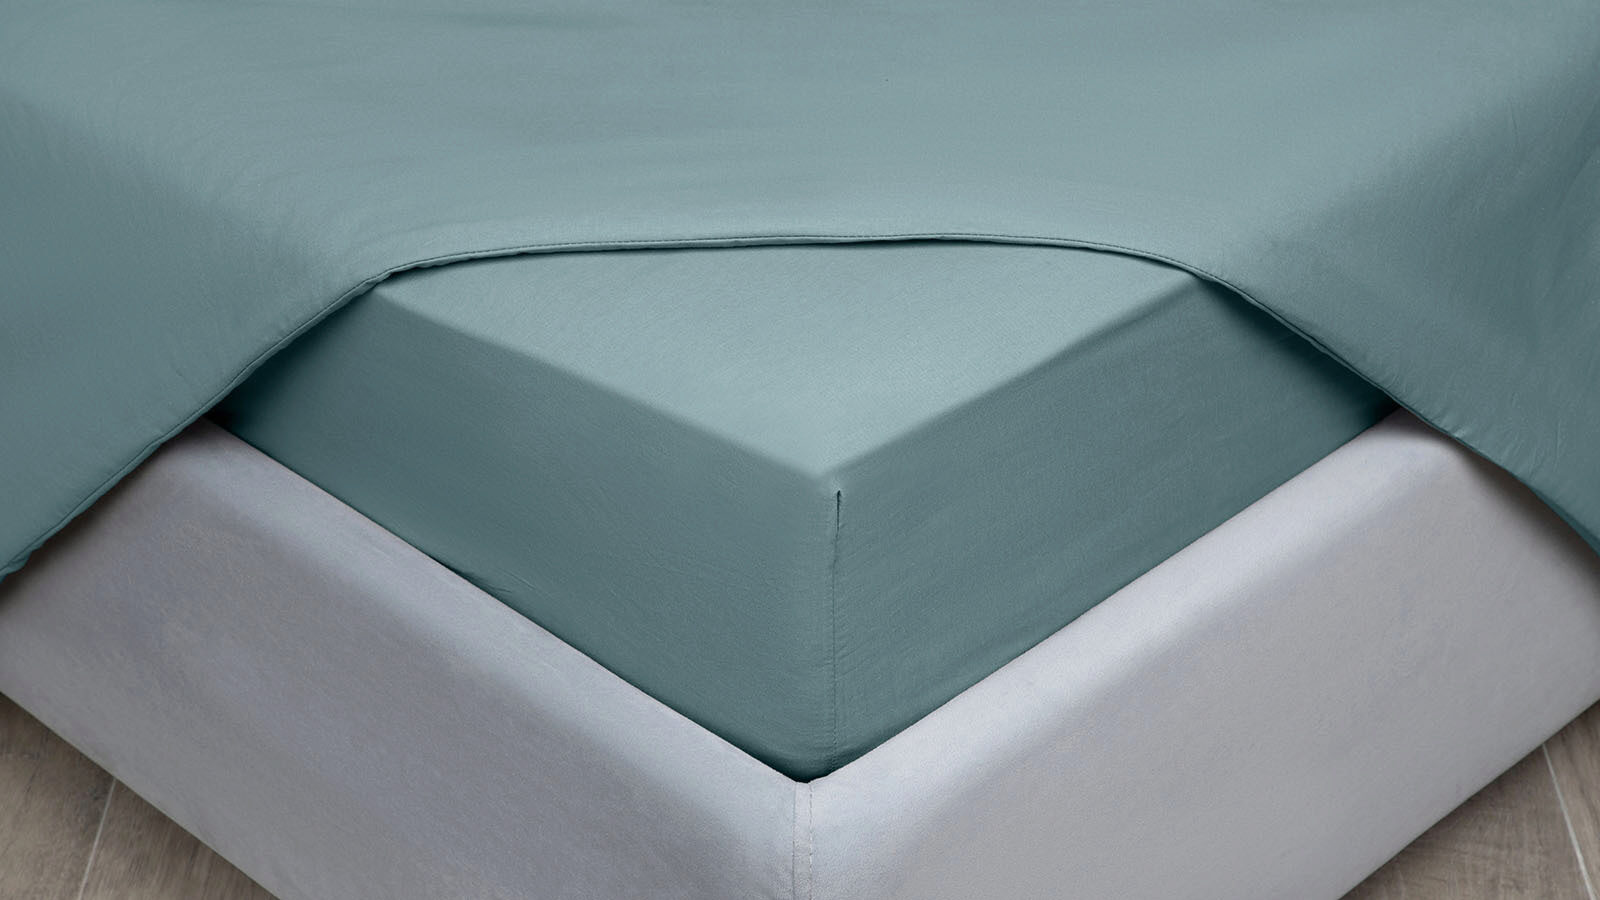 Простыня на резинке Comfort Cotton, цвет: Серо-голубой простыня sms стандарт 01 462 70 80 см голубой 100 шт